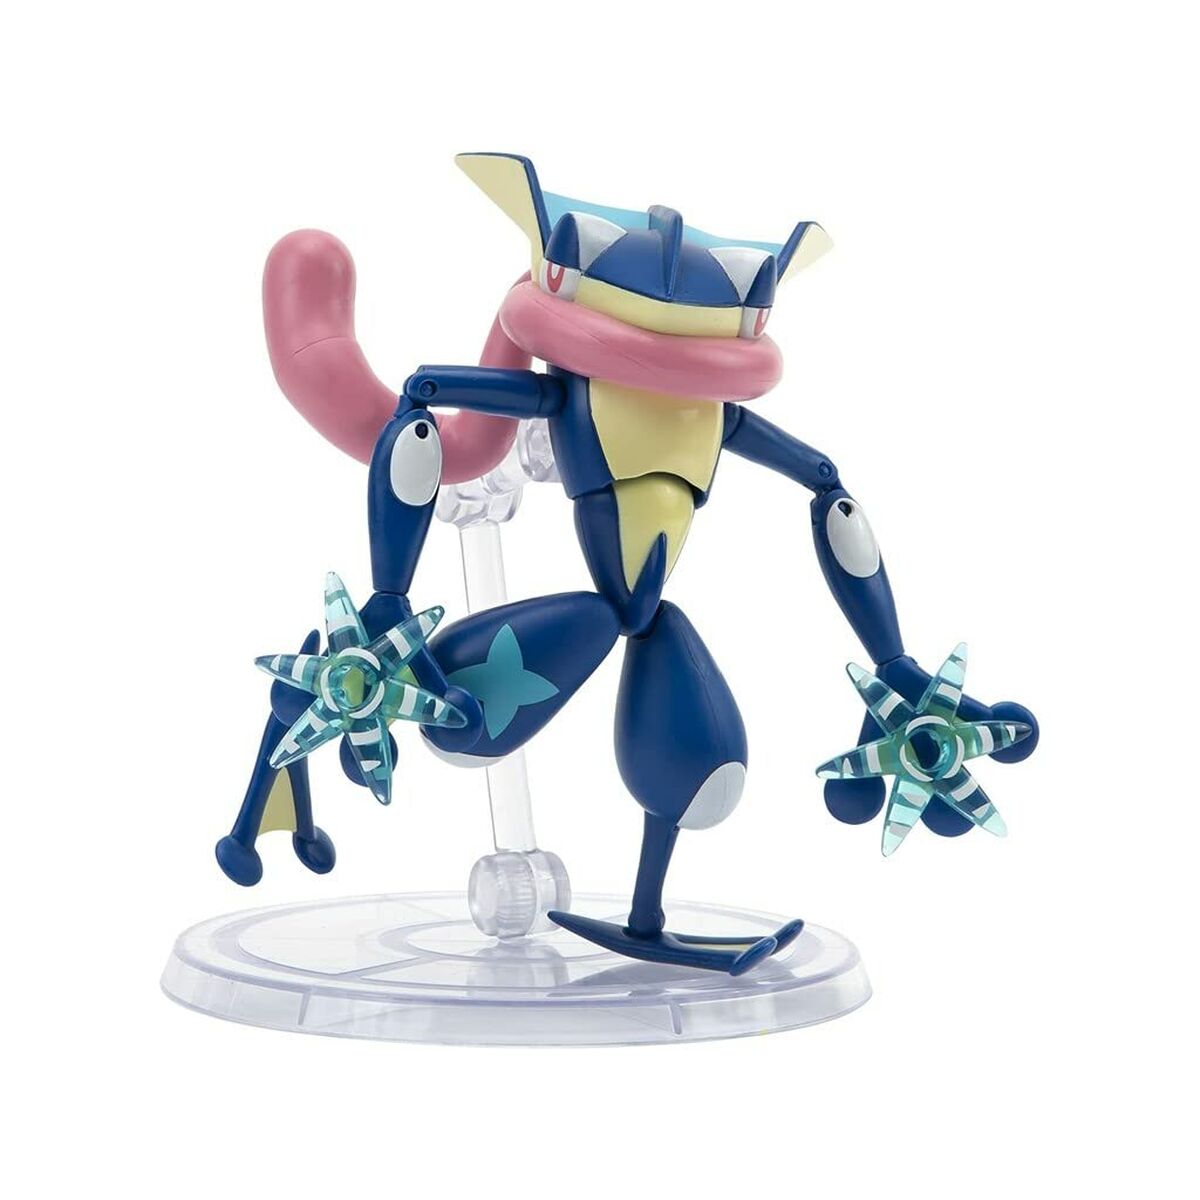 Ledad figur Pokémon 15 cm-Leksaker och spel, Dockor och actionfigurer-Pokémon-peaceofhome.se